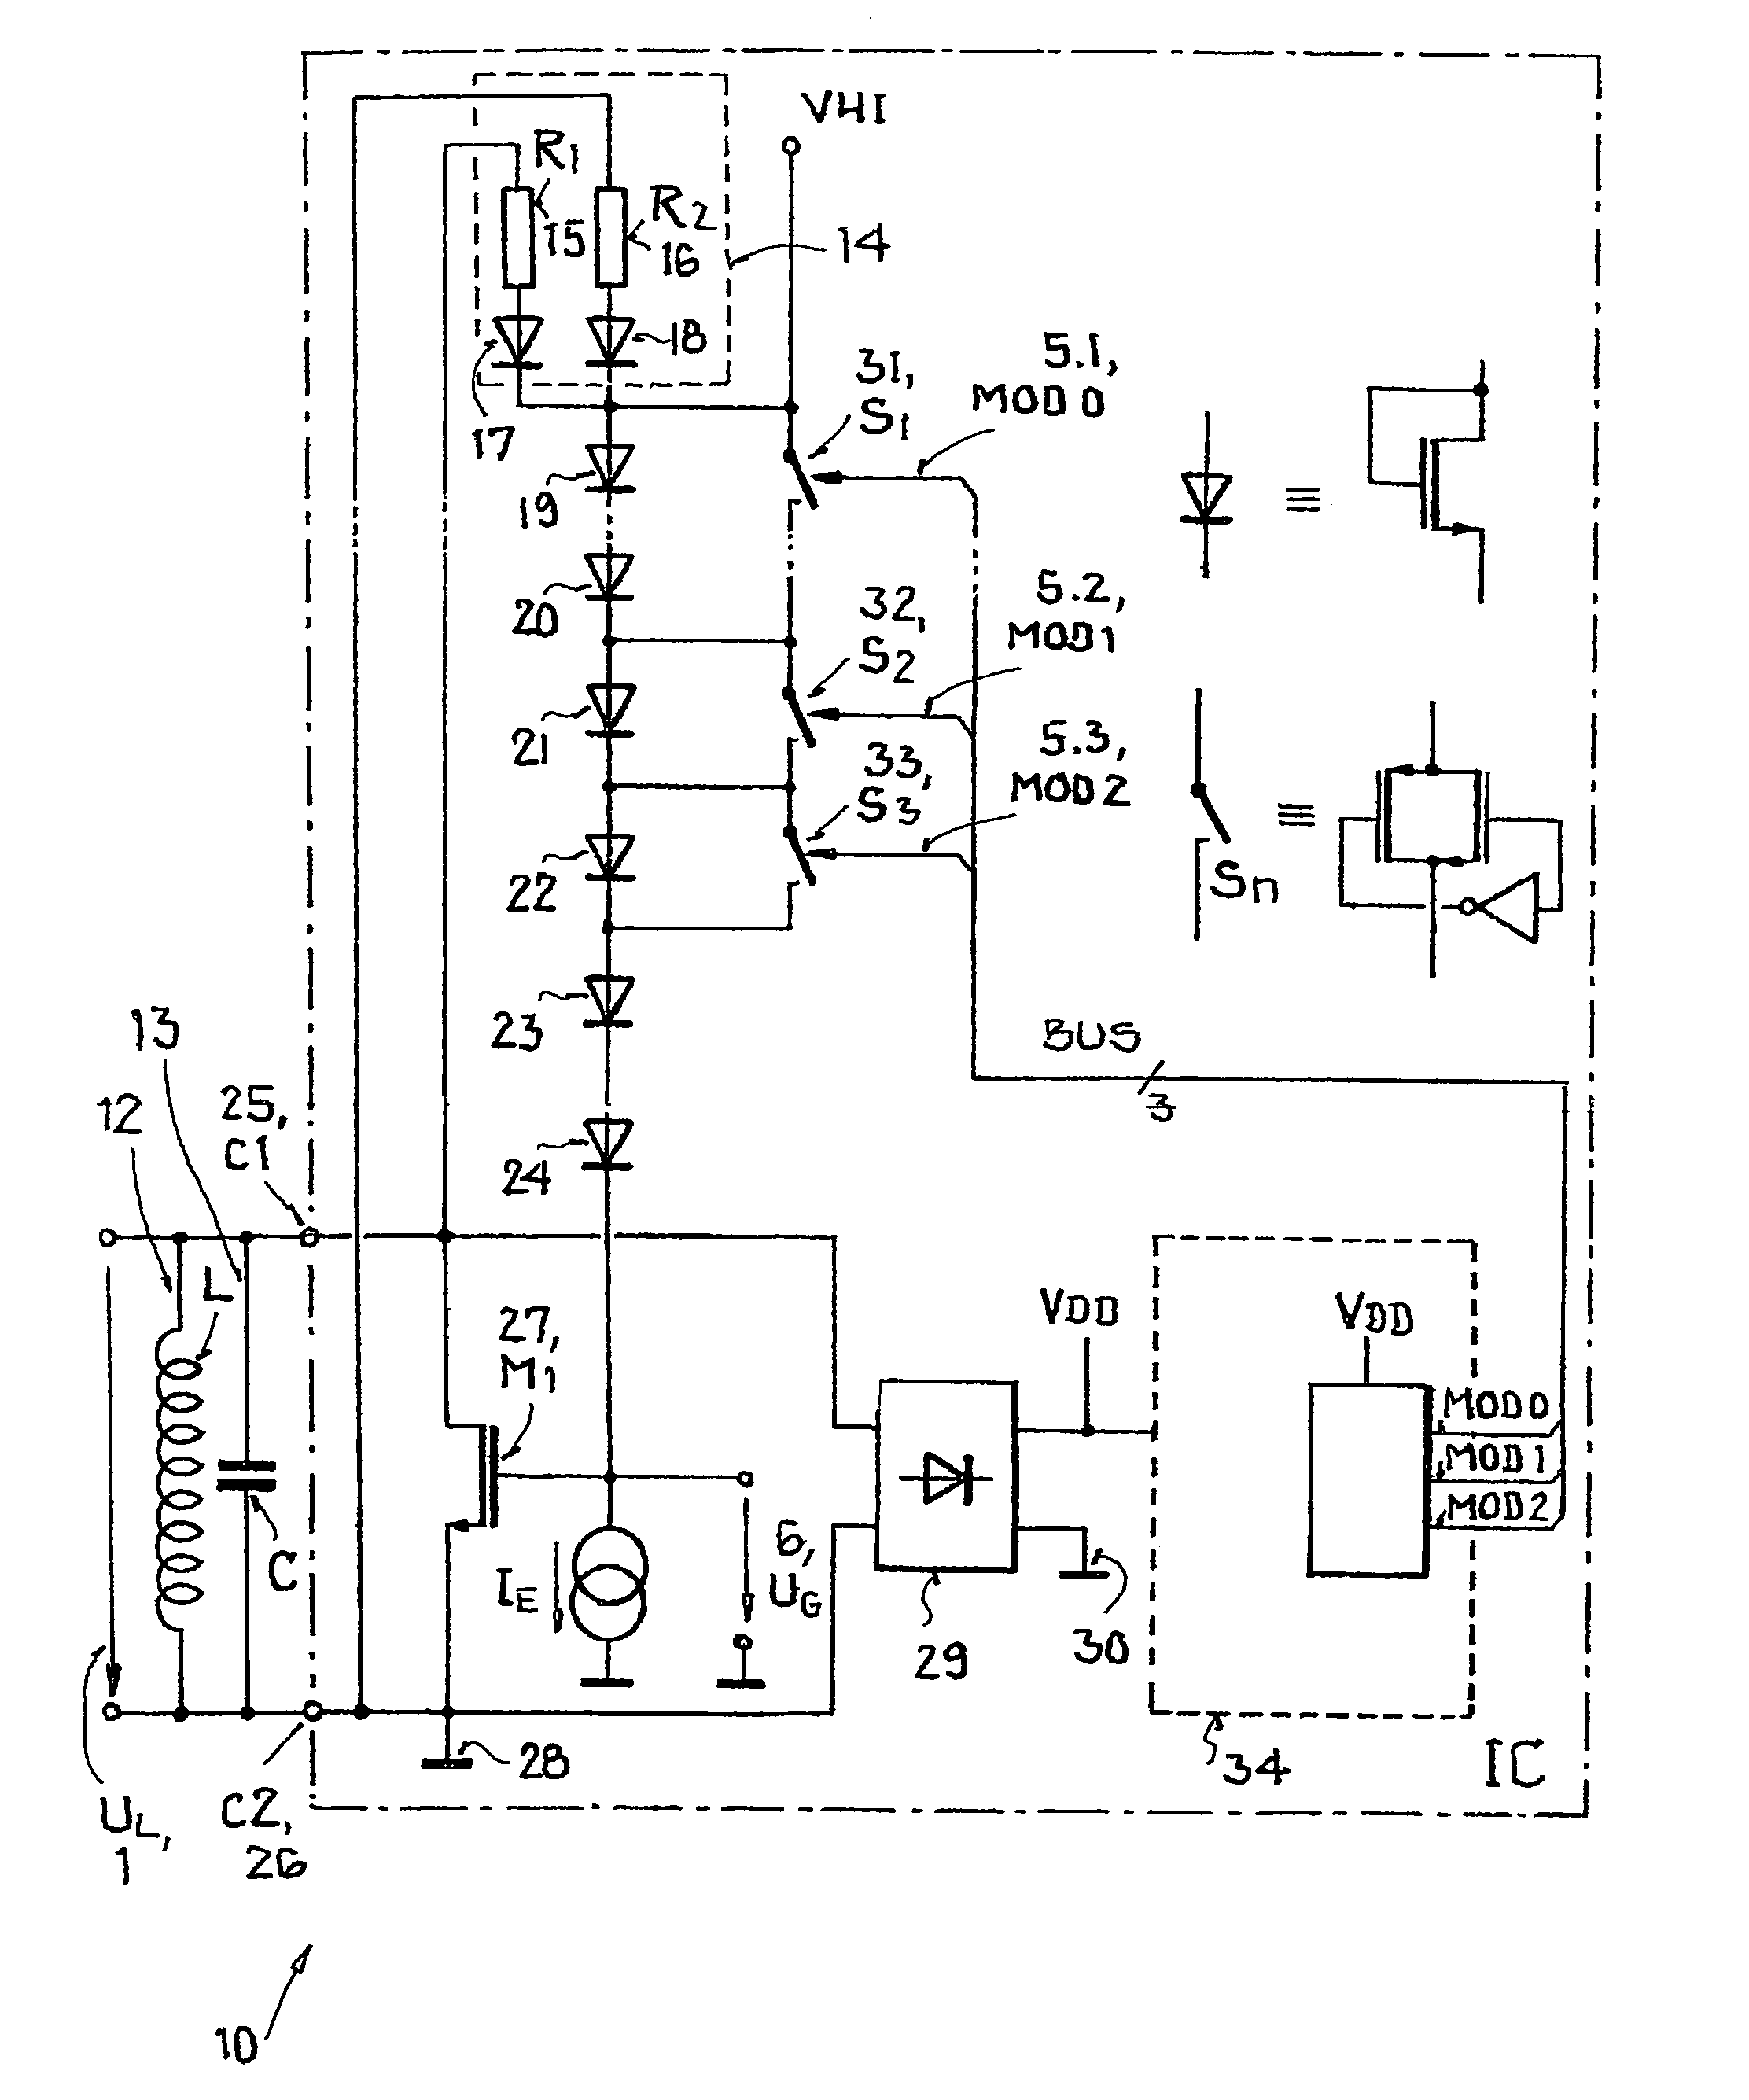 Method for voltage limitation in a transponder